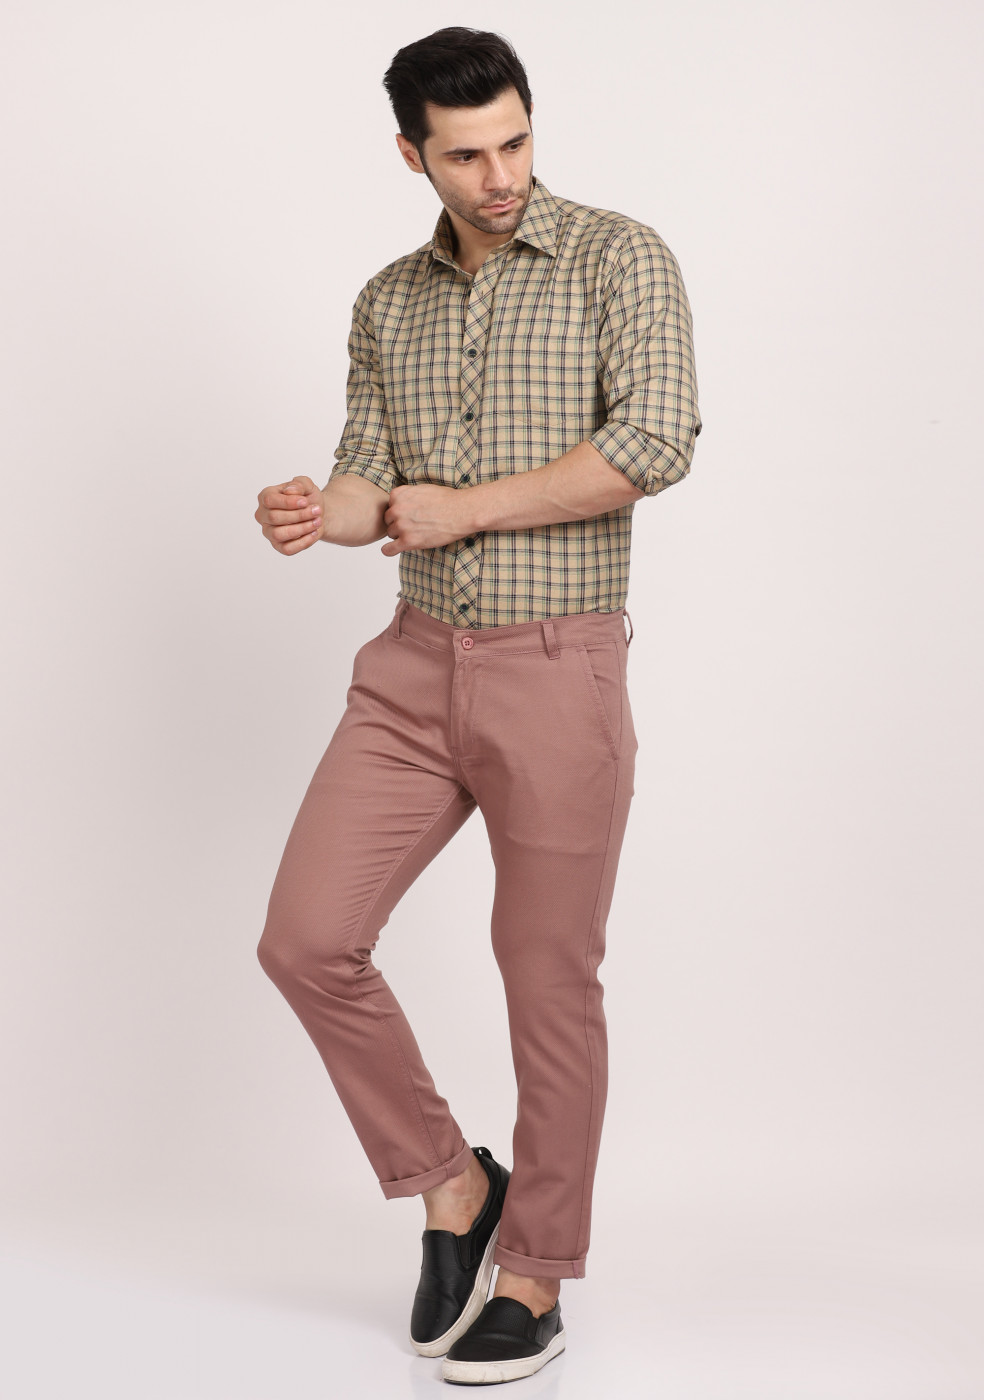 ASHTOM Dusty Pink Formal Cotton Trouser Regular Fit For Men